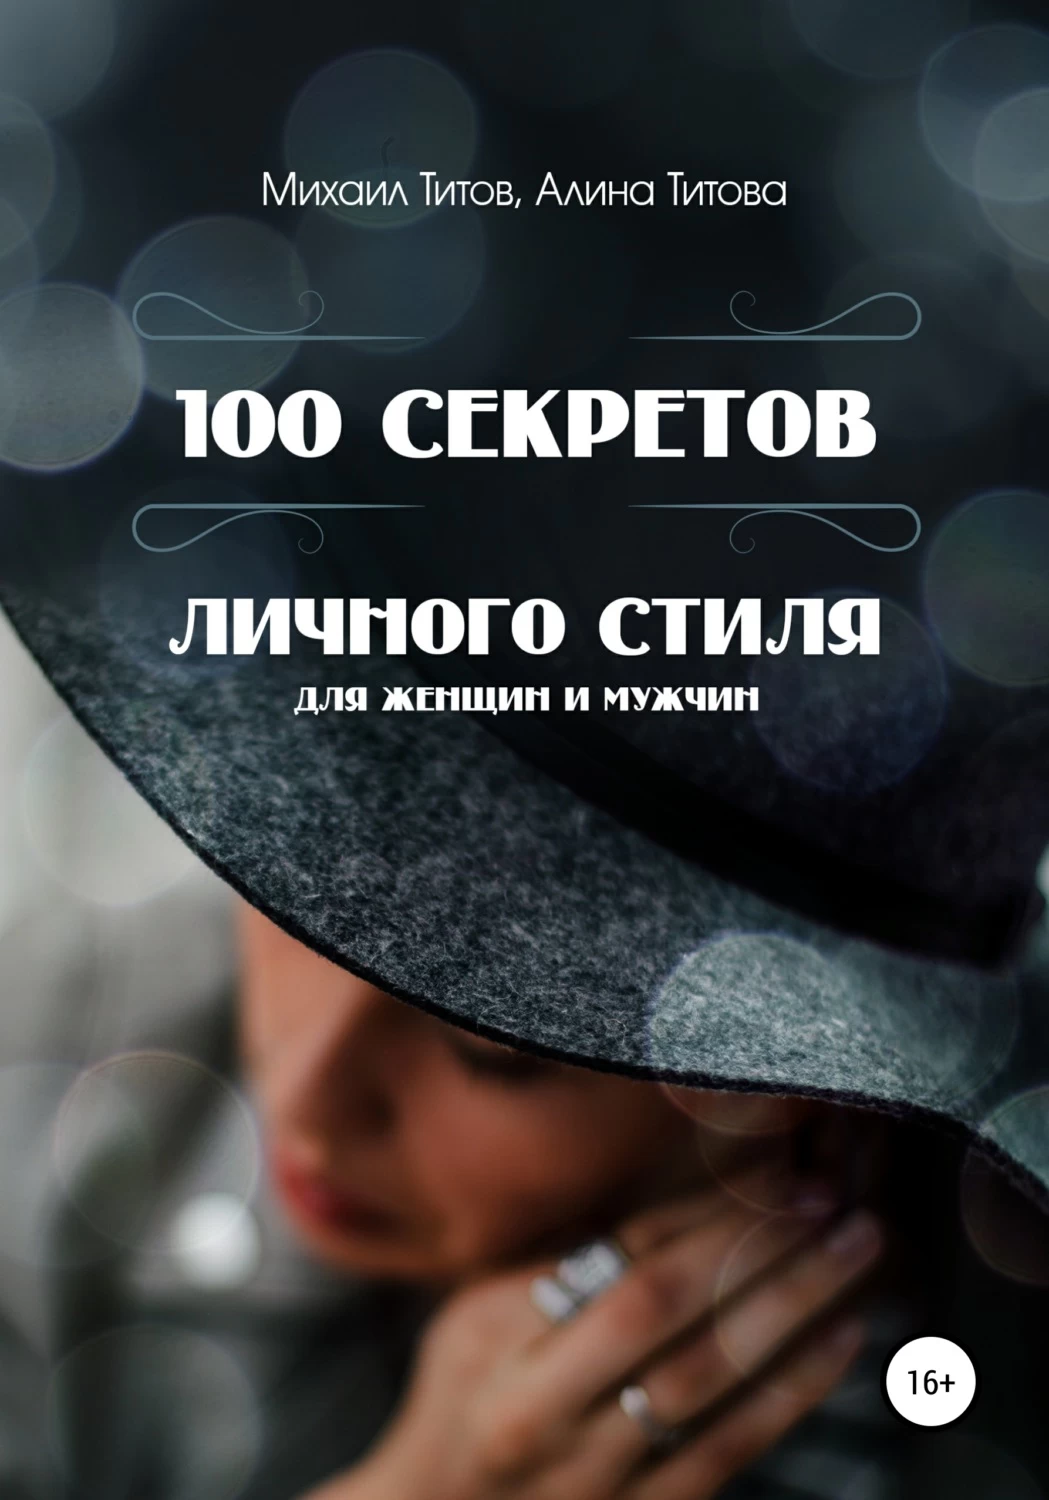 Личная персональная тайна. 100 Секретов. Книга СТО женщин СТО стилей. Жизнь на все 100 книга. Личный секрет.